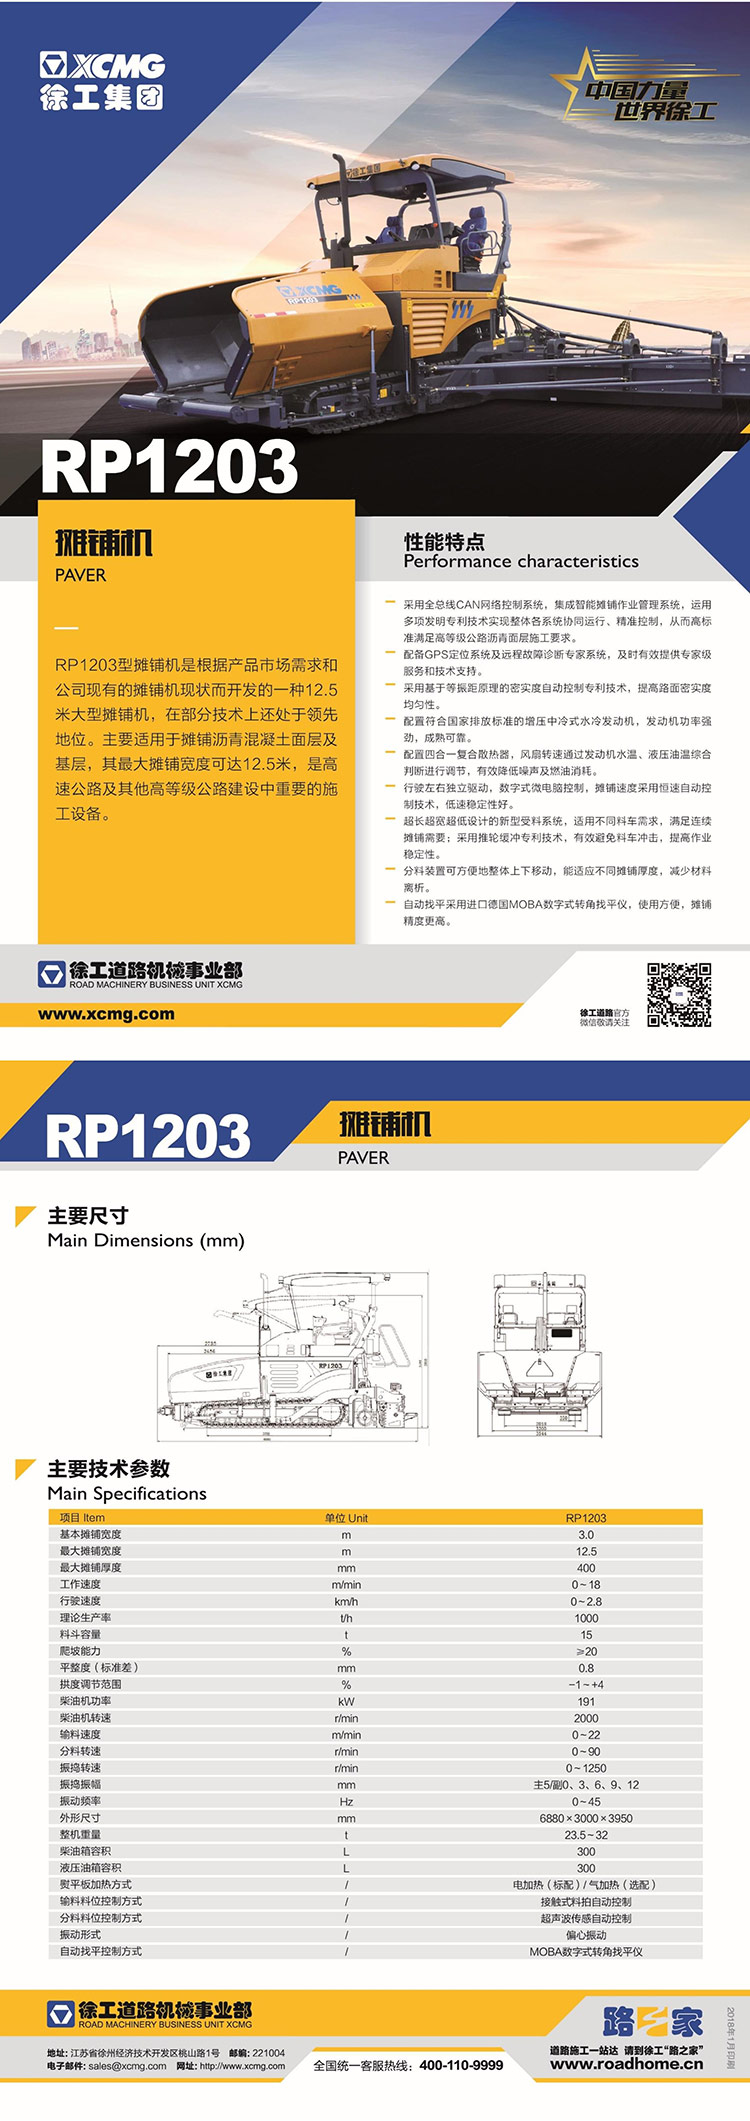 RP1203.jpg